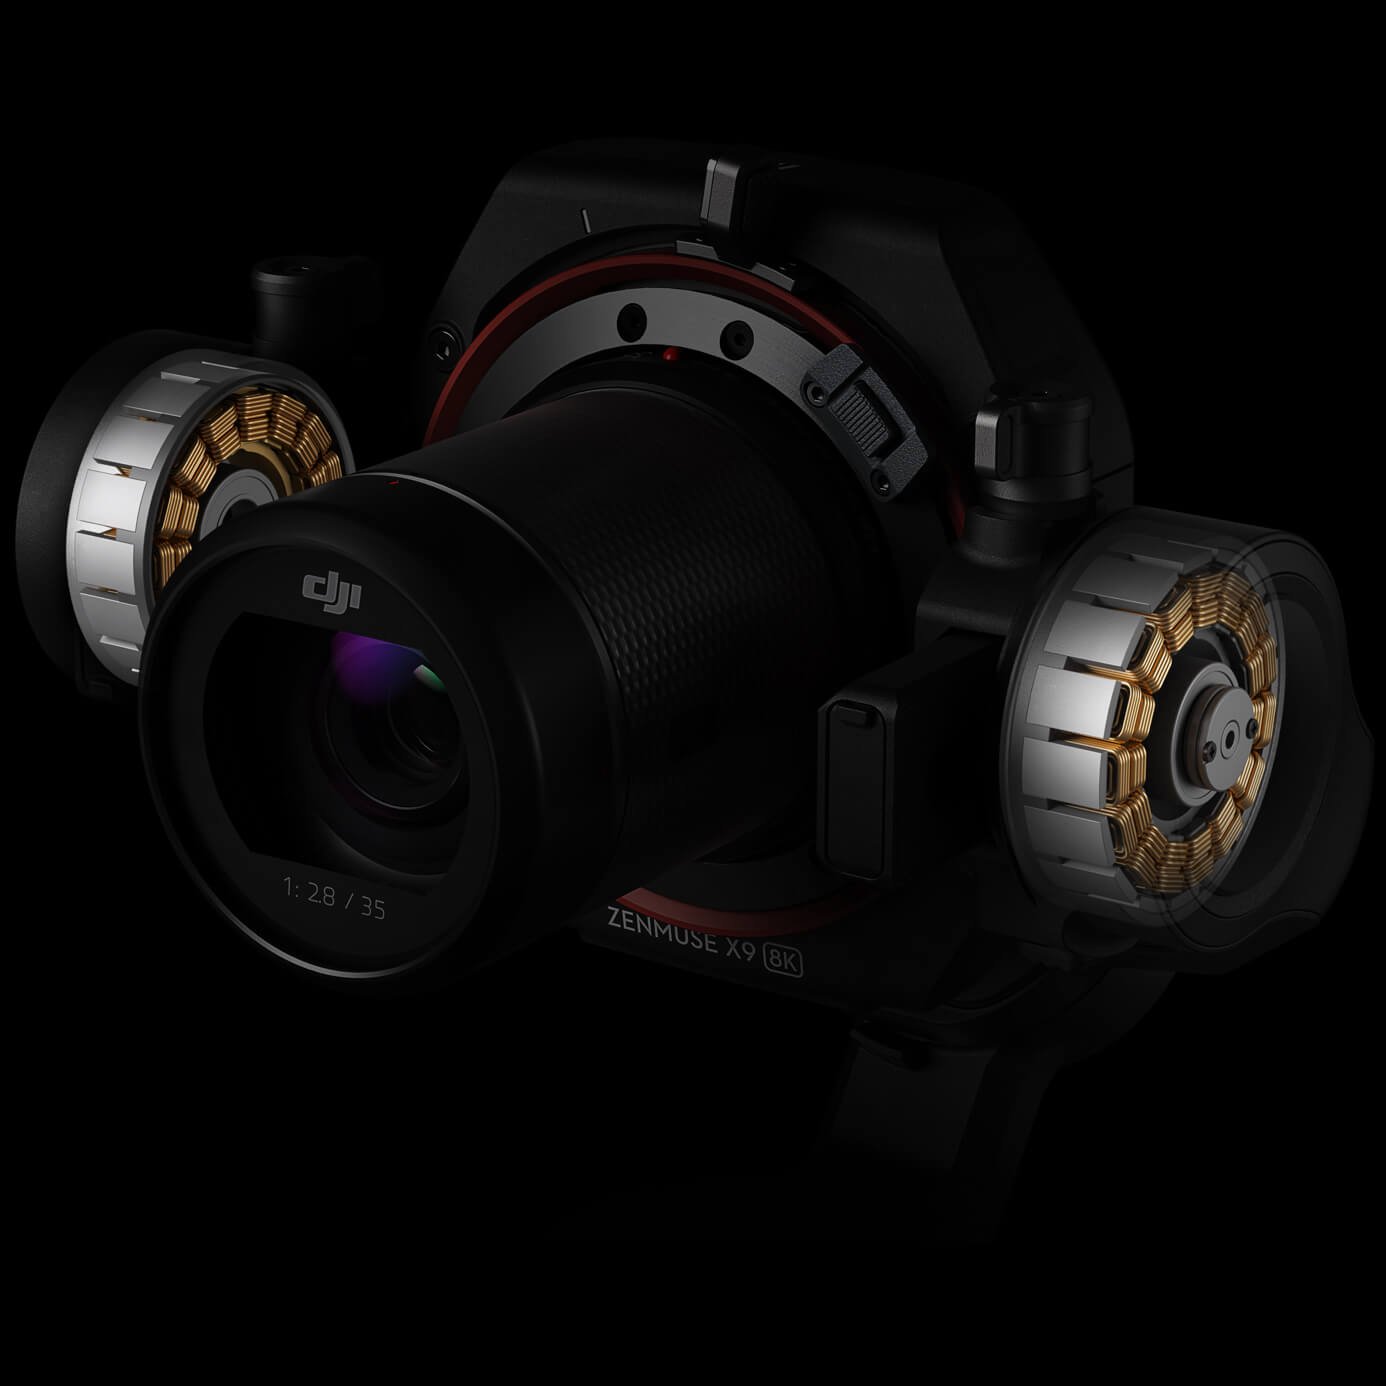 Hệ thống ổn định hình ảnh trên máy ảnh gimbal Zenmuse X9